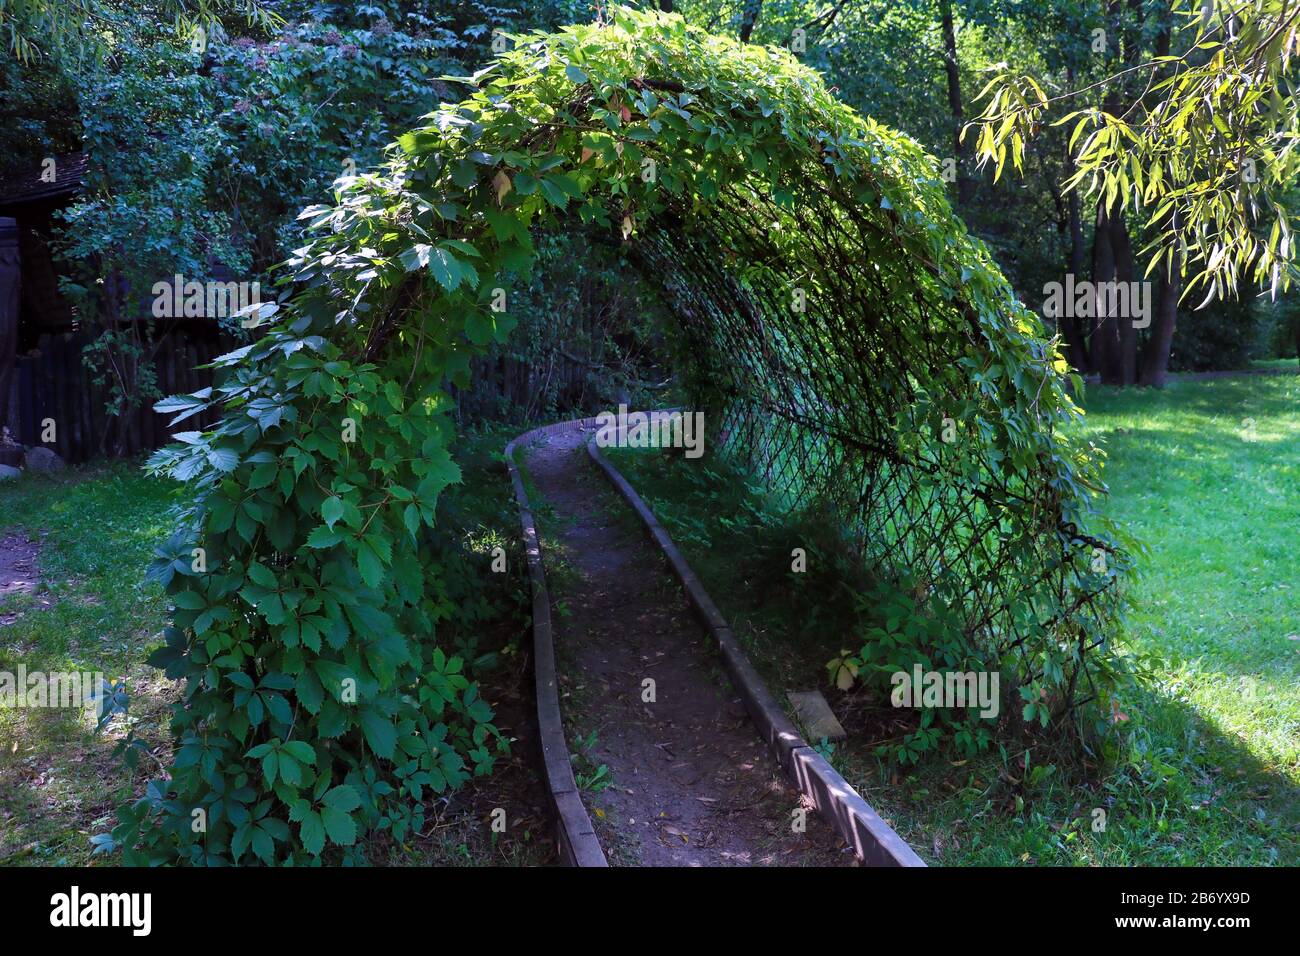 Bellissimo sentiero nel giardino per passeggiate attraverso gli archi verdi della vegetazione Foto Stock